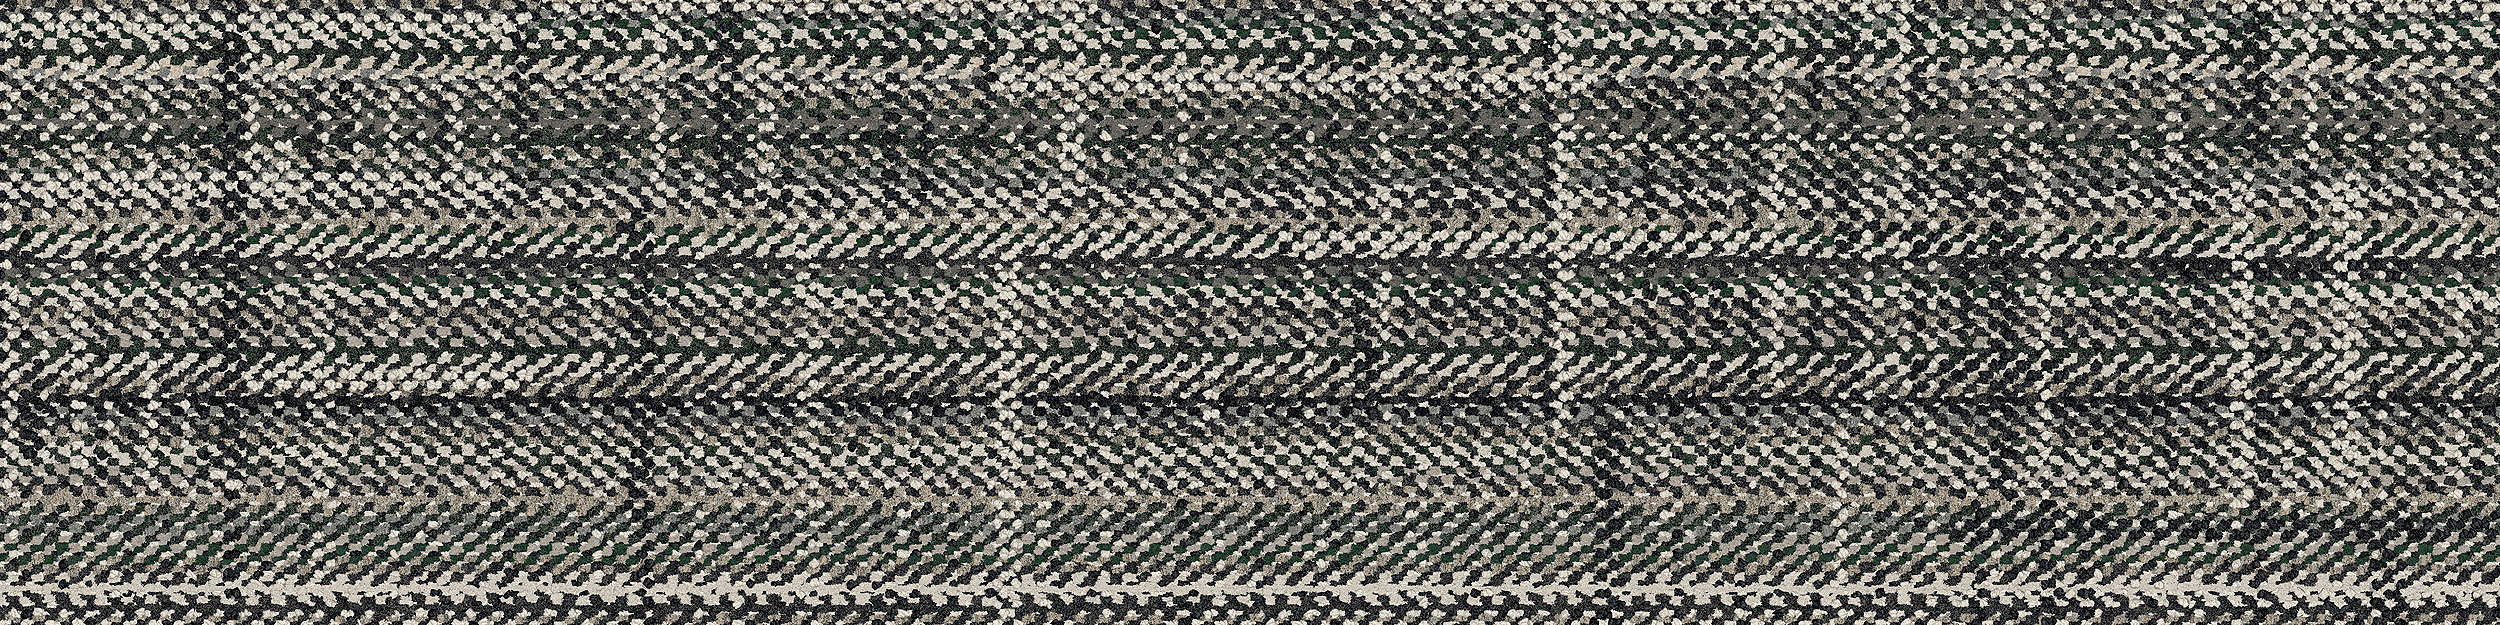 French Seams Carpet Tile In Compiegne numéro d’image 6